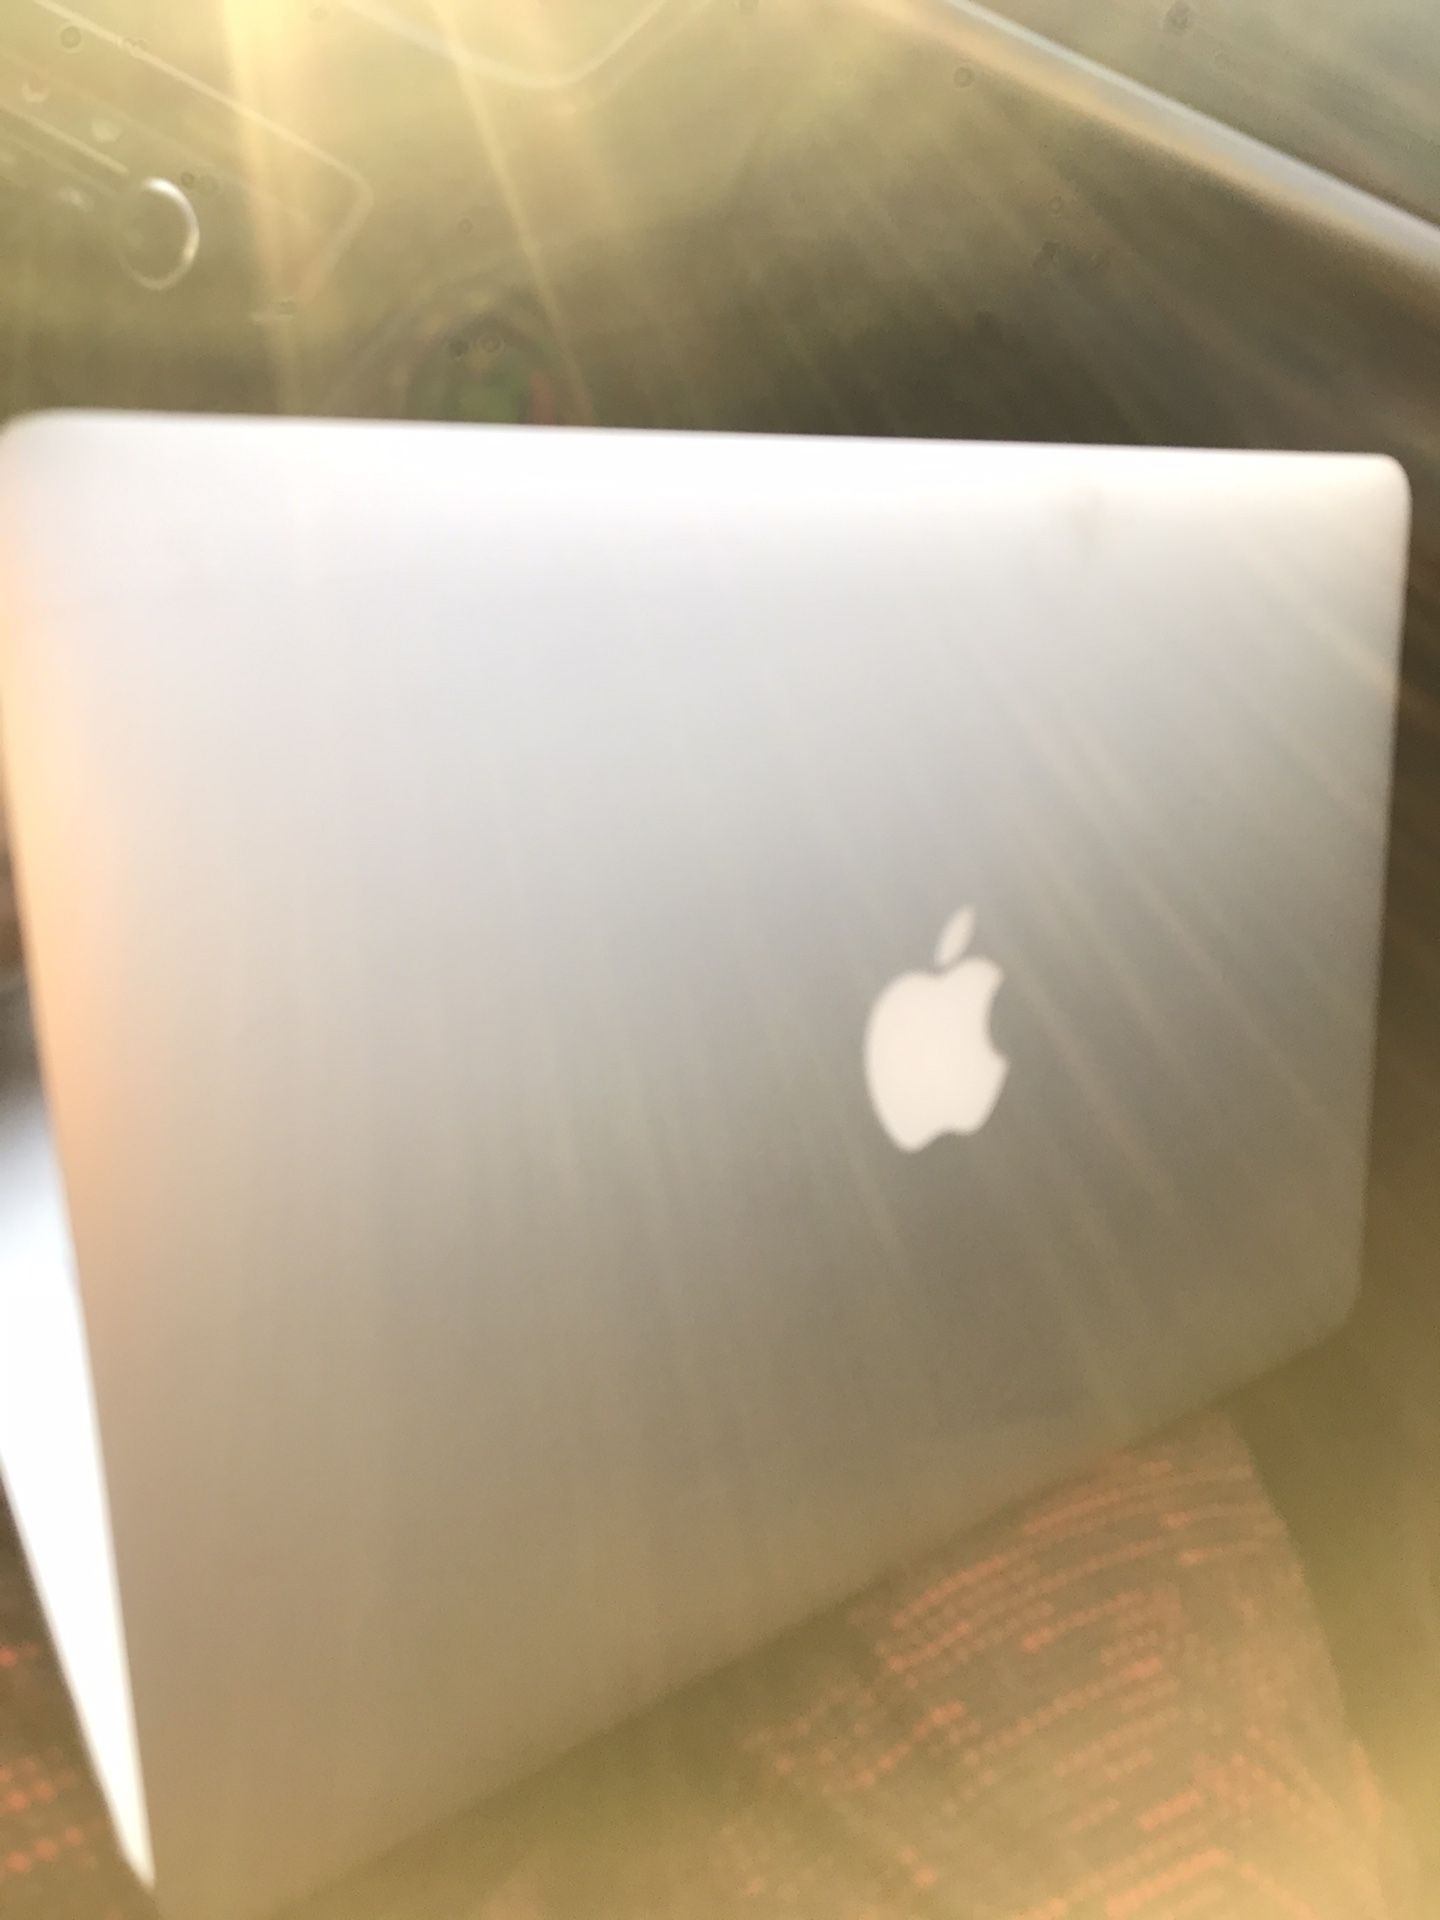 Apple MacBook Air SemiNew